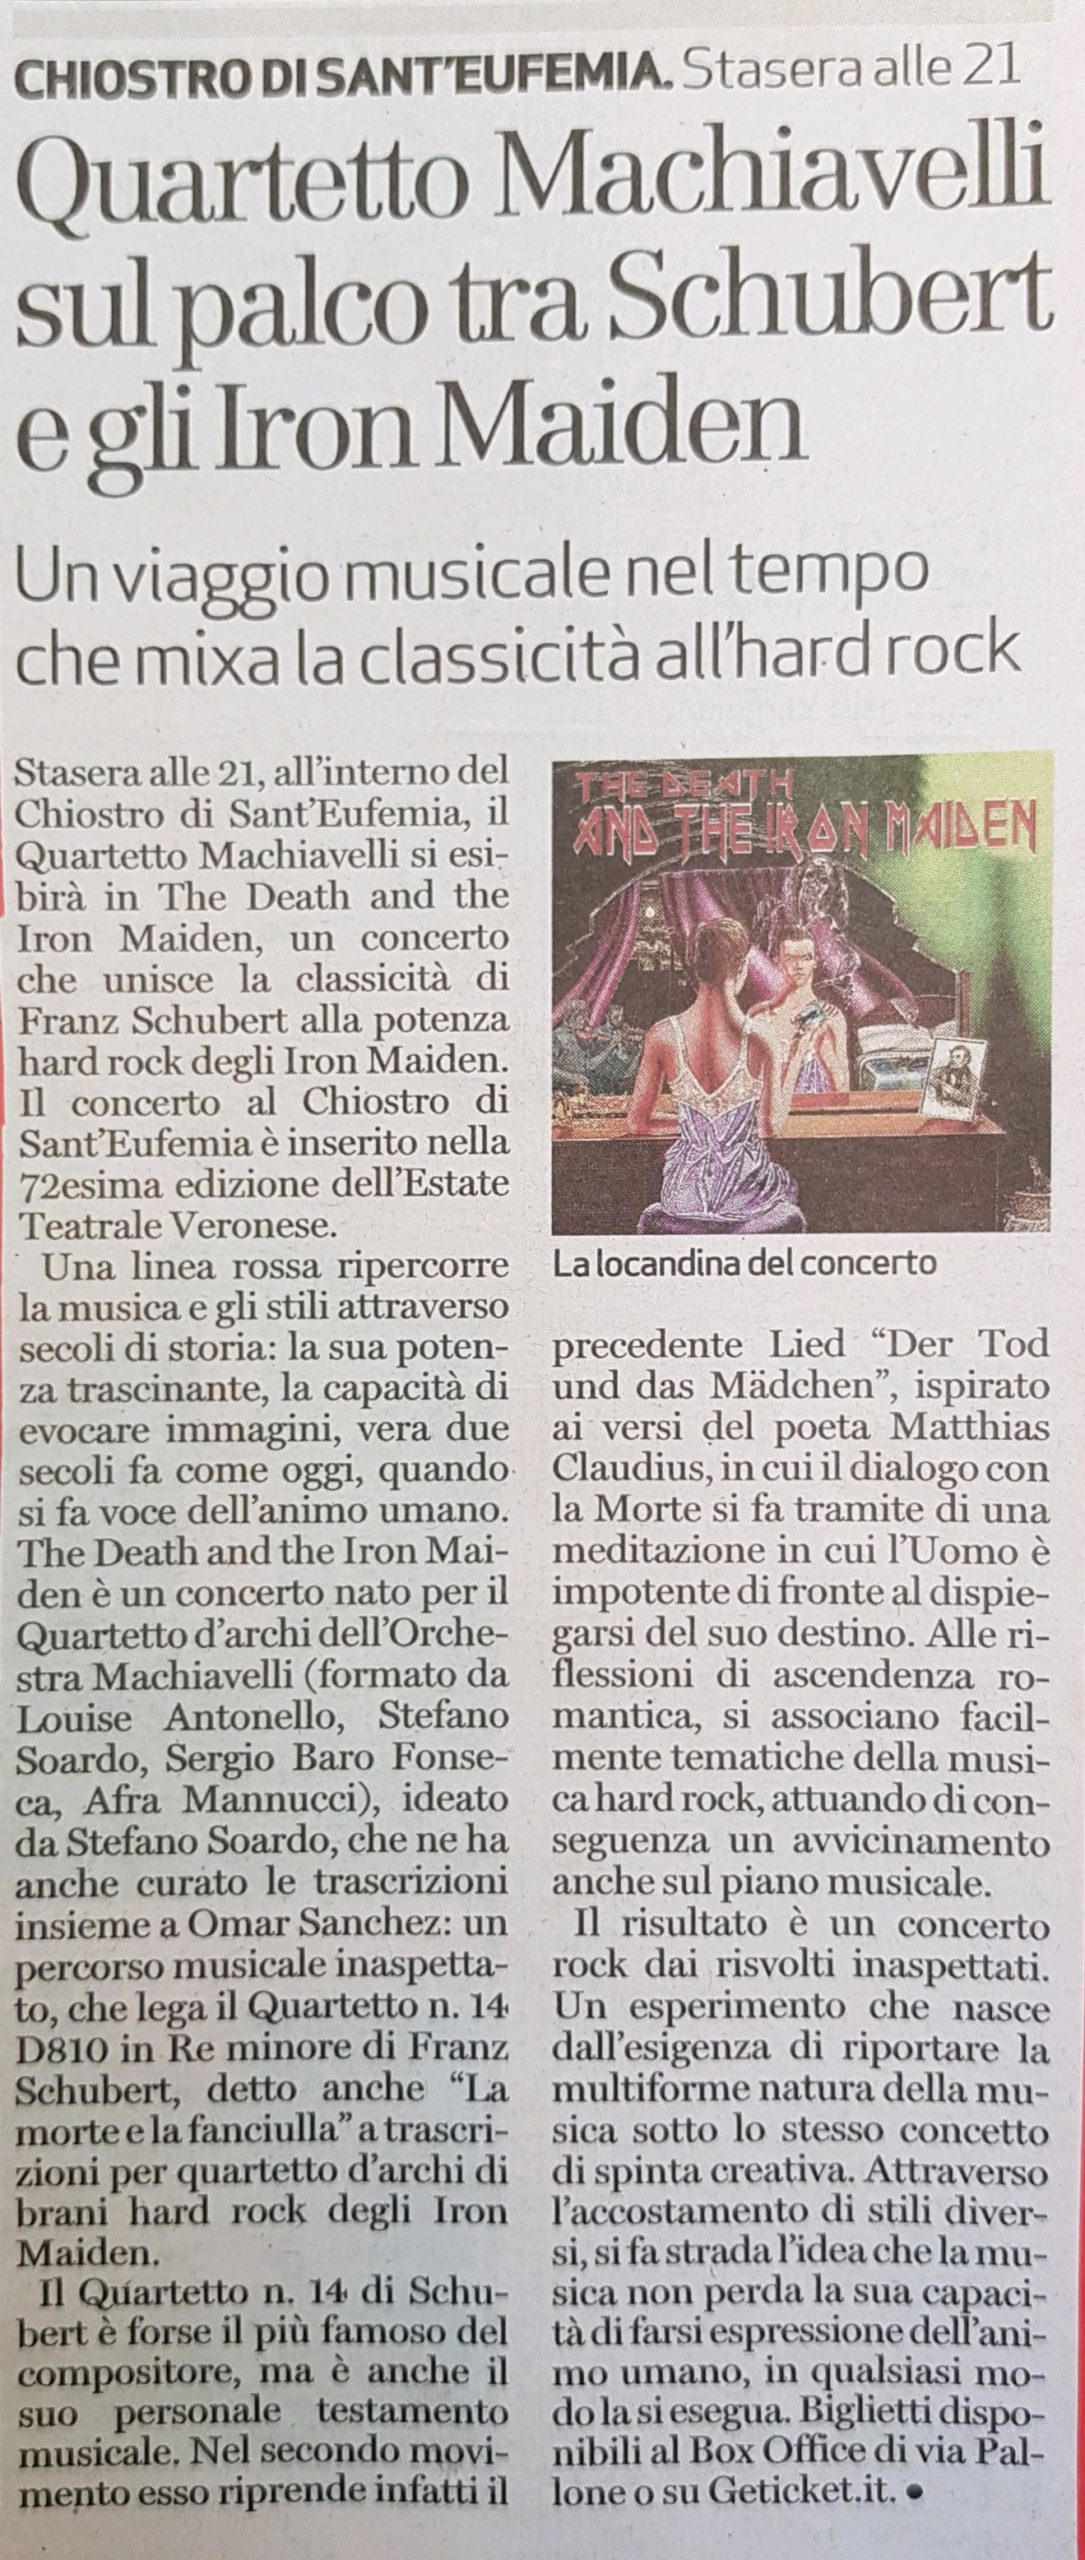 rassegna-stampa-orchestra-machiavelli-the-death-and-the-iron-maiden-concerti-verona